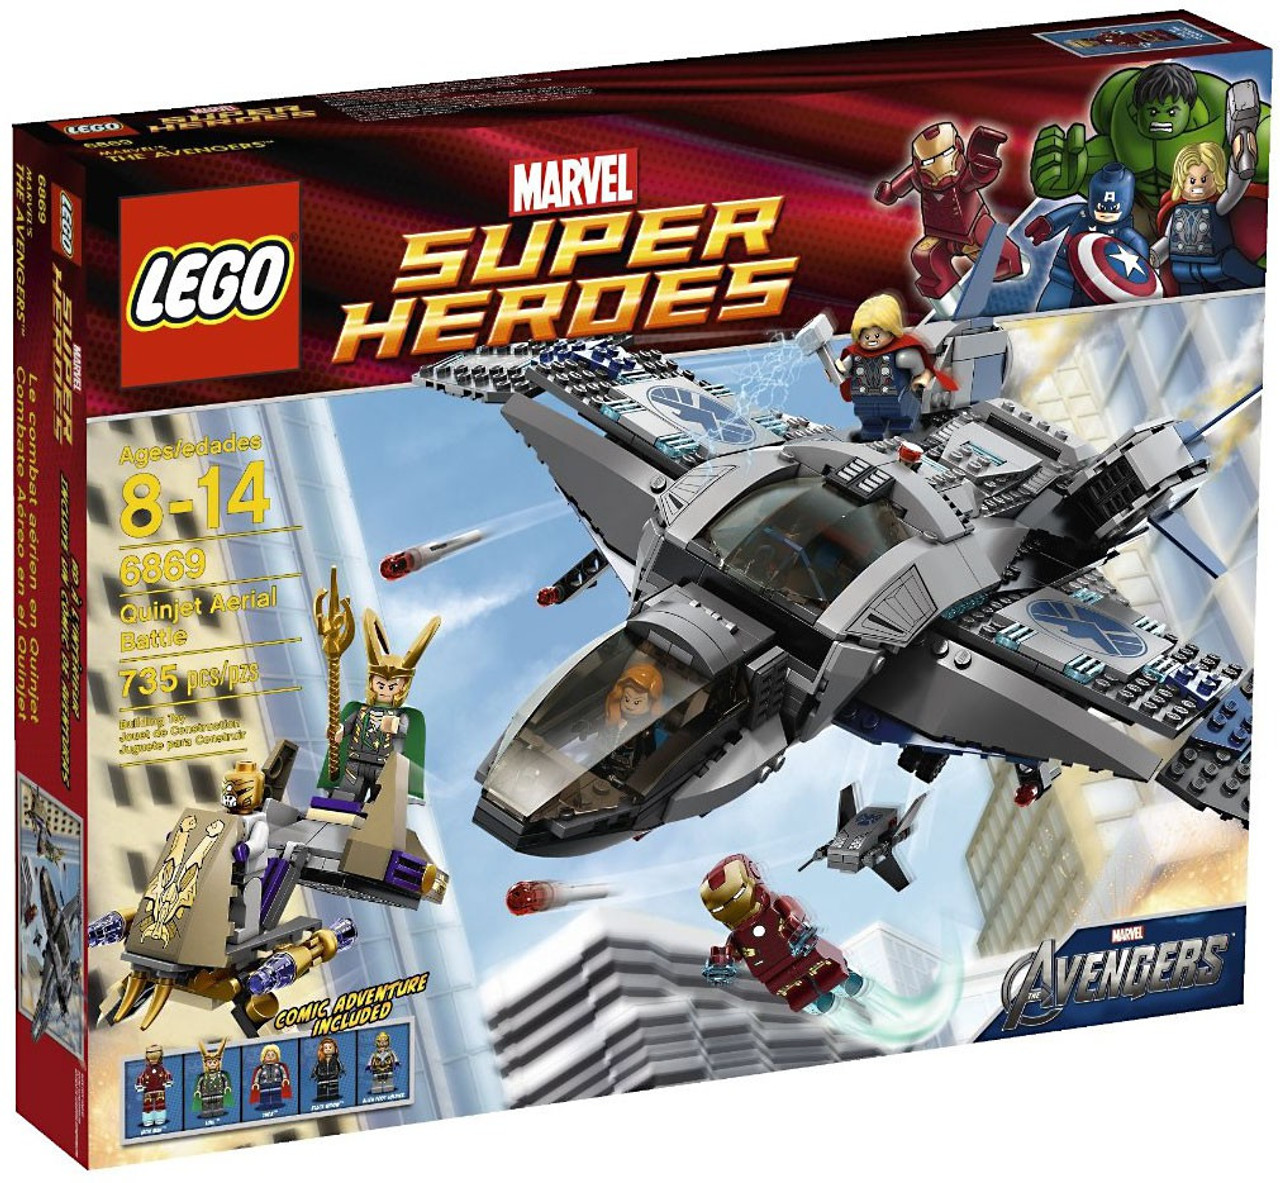 lego-marvel-super-heroes-avengers-quinjet-aerial-battle-set-6869-toywiz